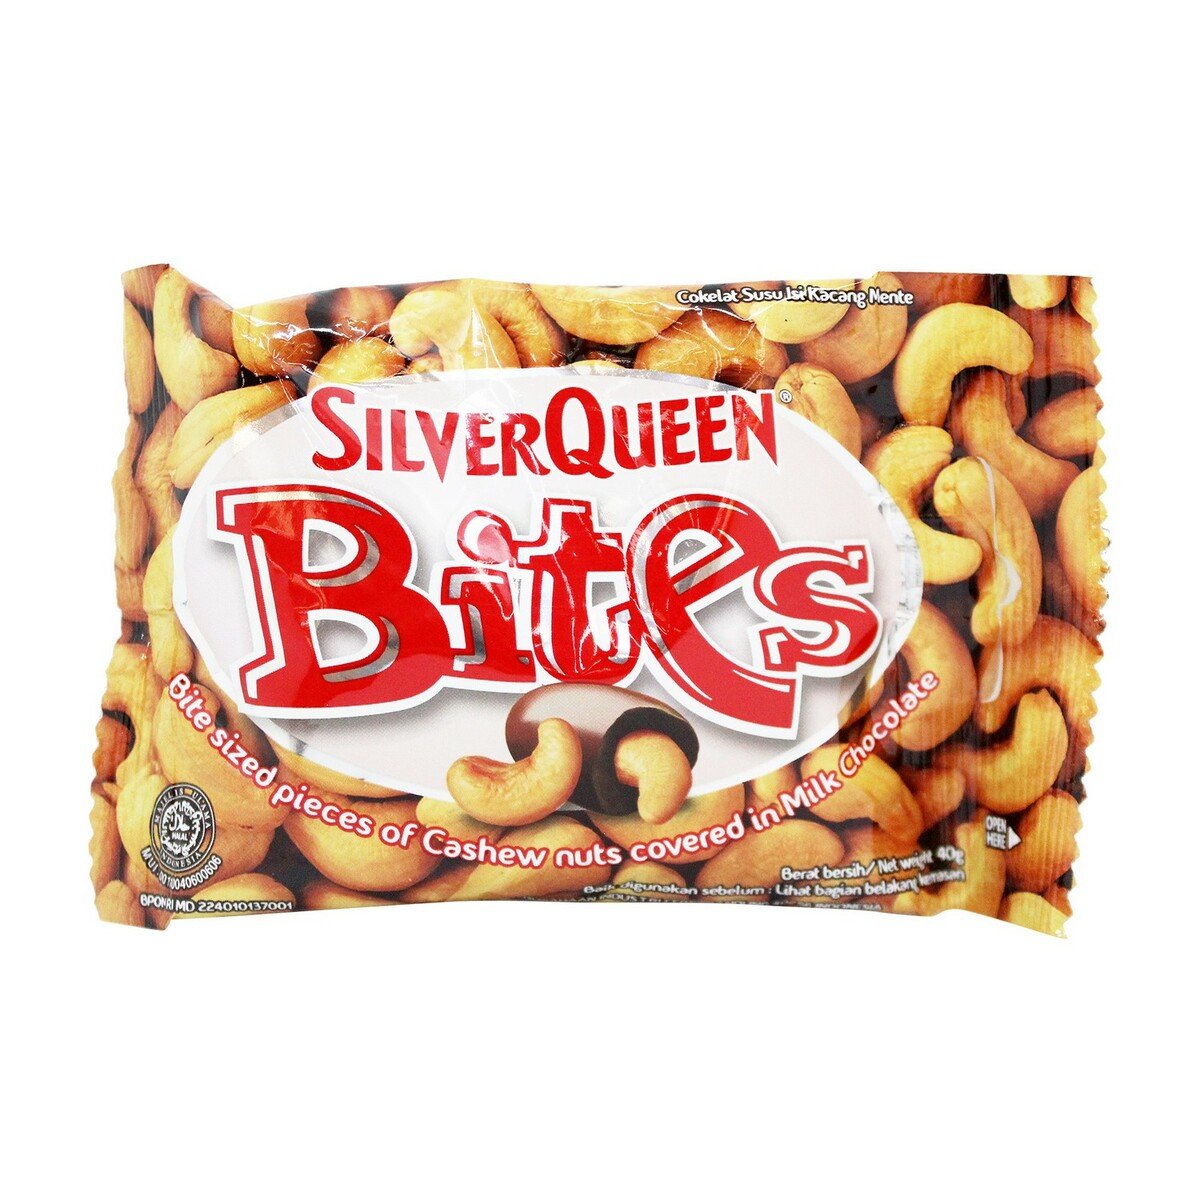 Silverqueen Bites 40g